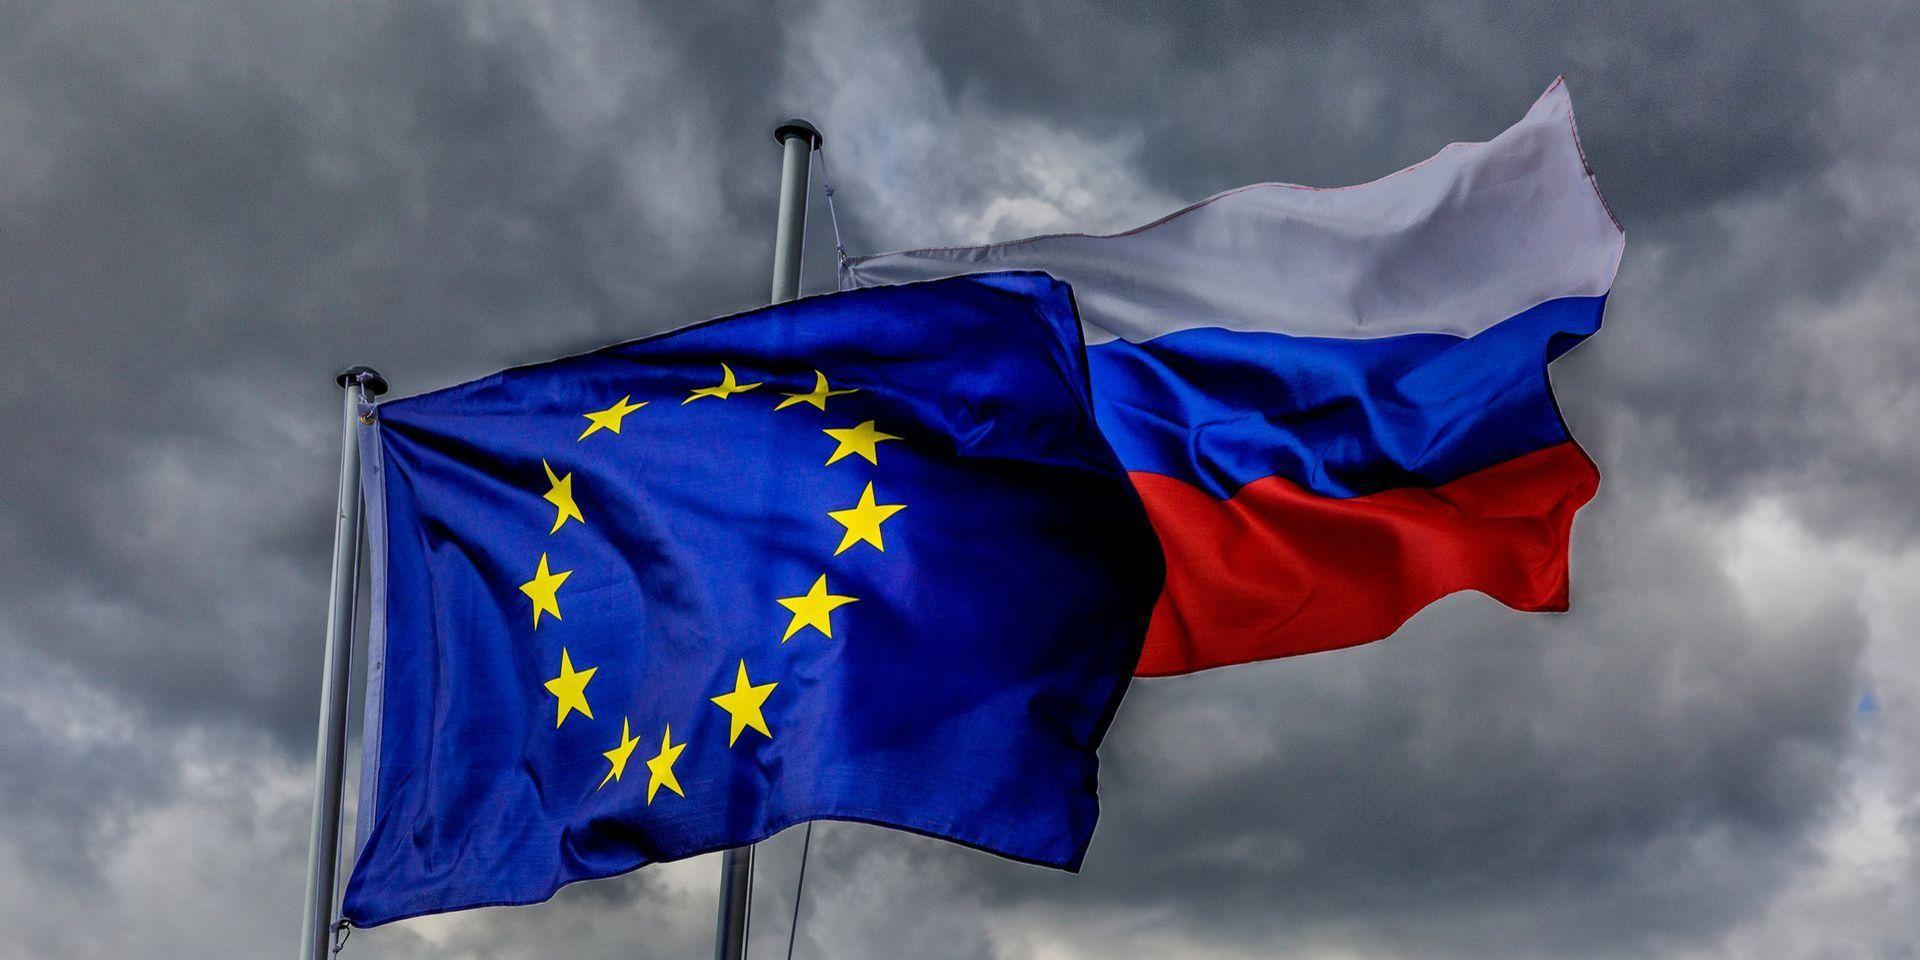 Чехия требует пересмотра основ отношений межу Евросоюзом и Россией